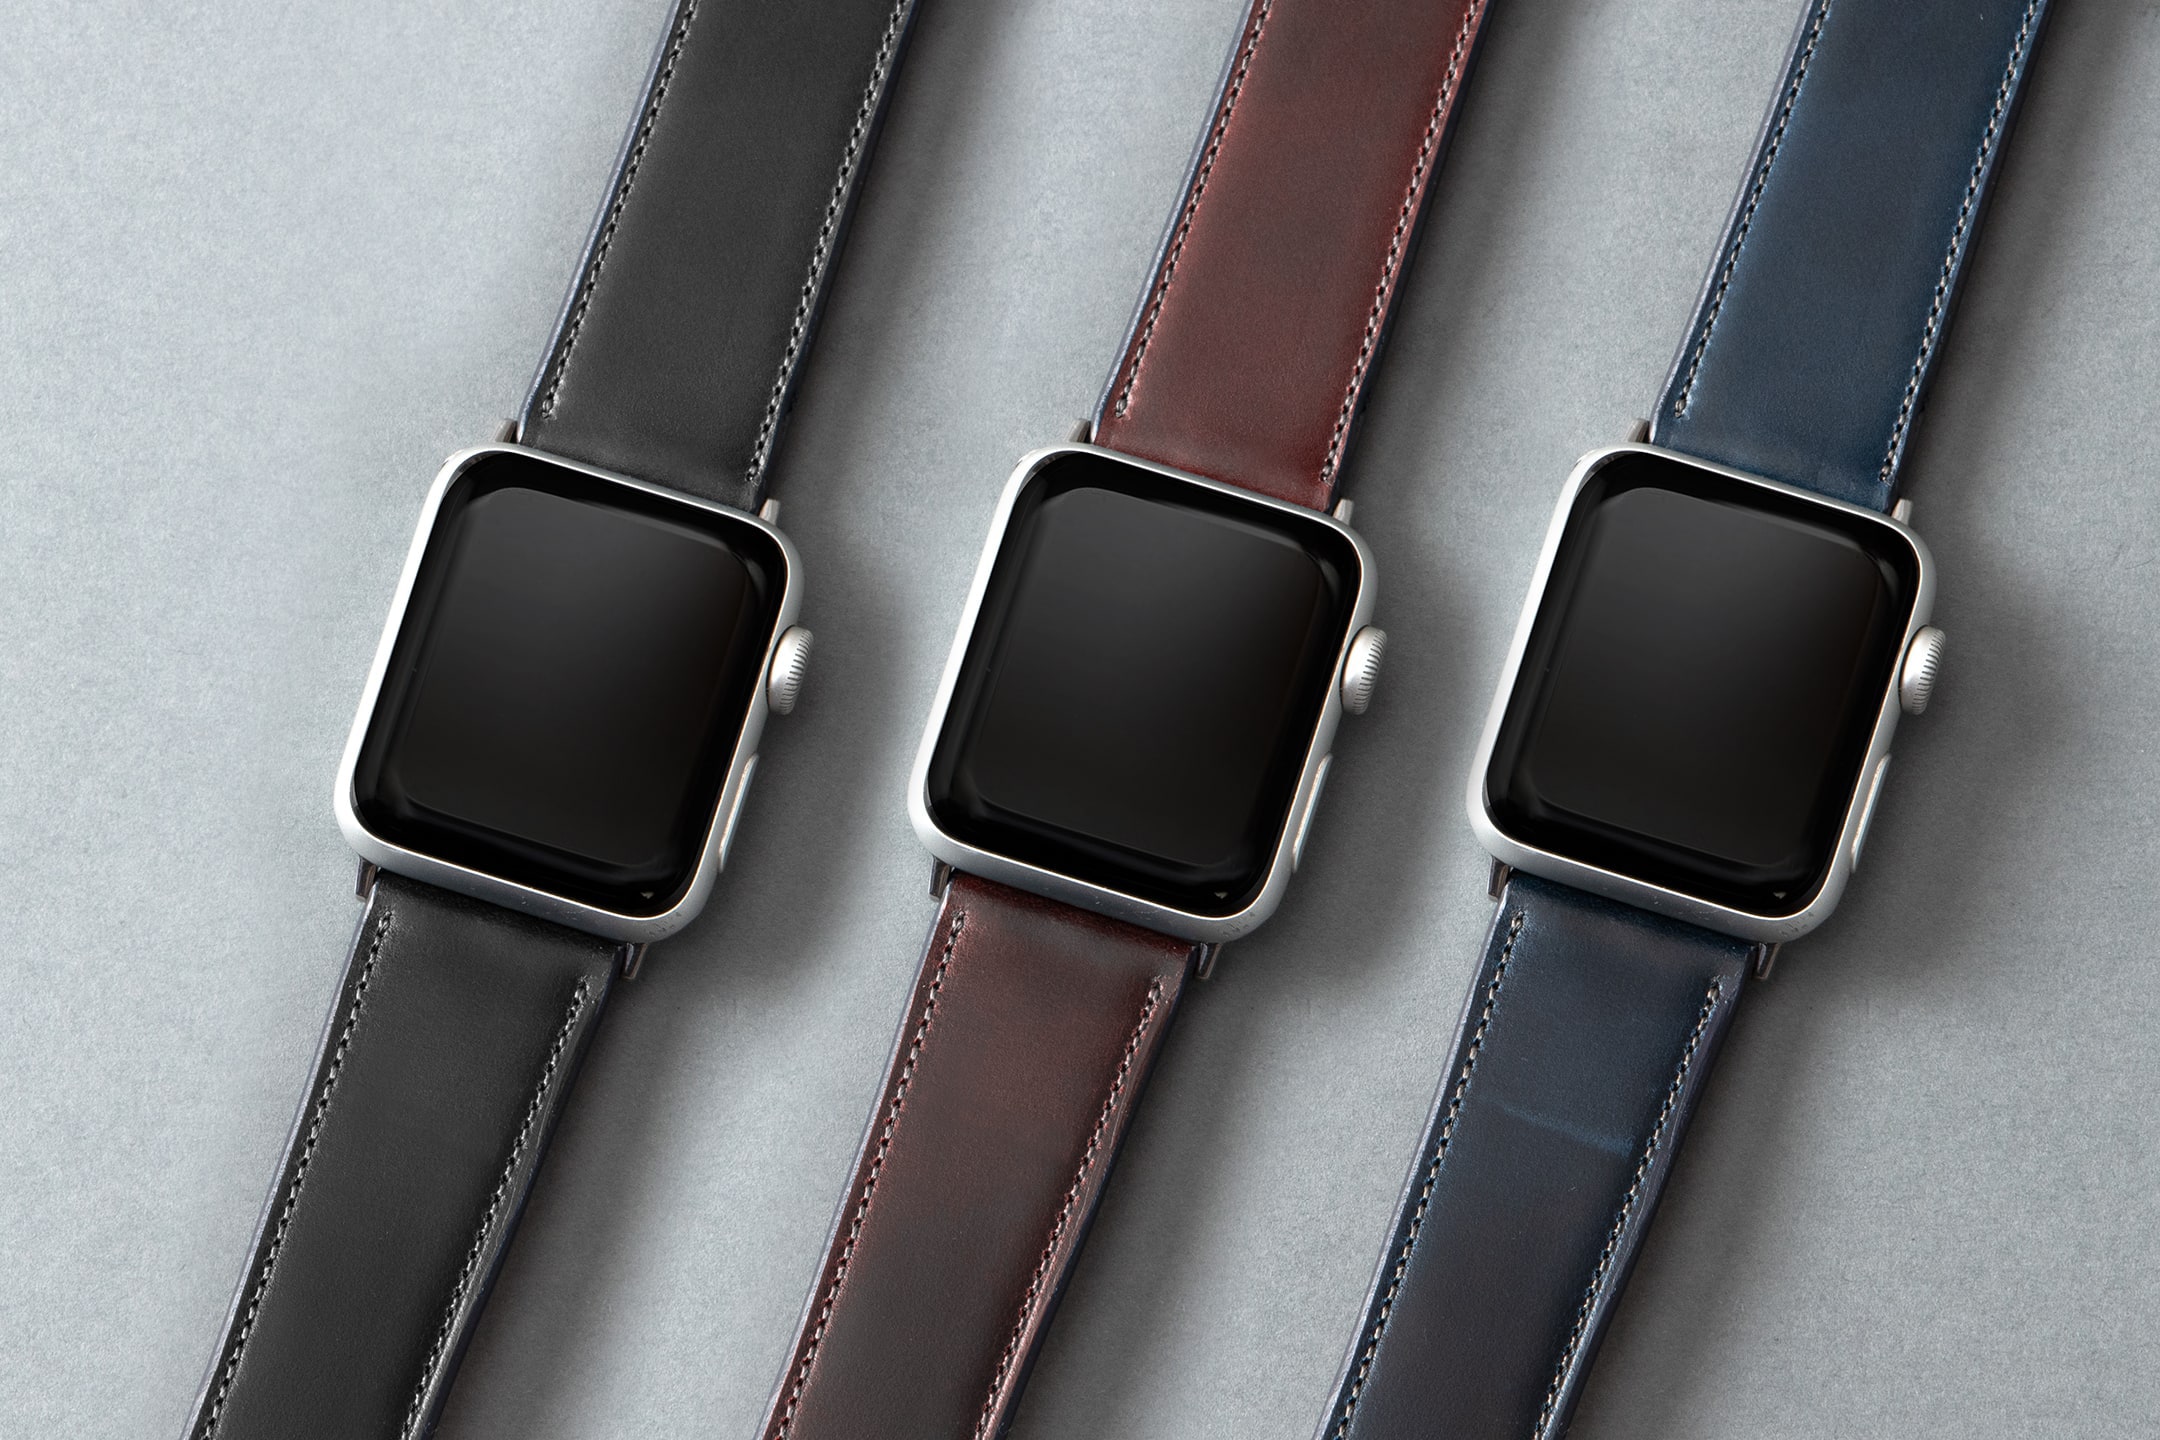 シェルコードバン アップルウォッチバンド | 大人の財布・ Apple Watch Band（アップルウォッチバンド） など拘りの日本製ブランドなら  Mens Leather Store